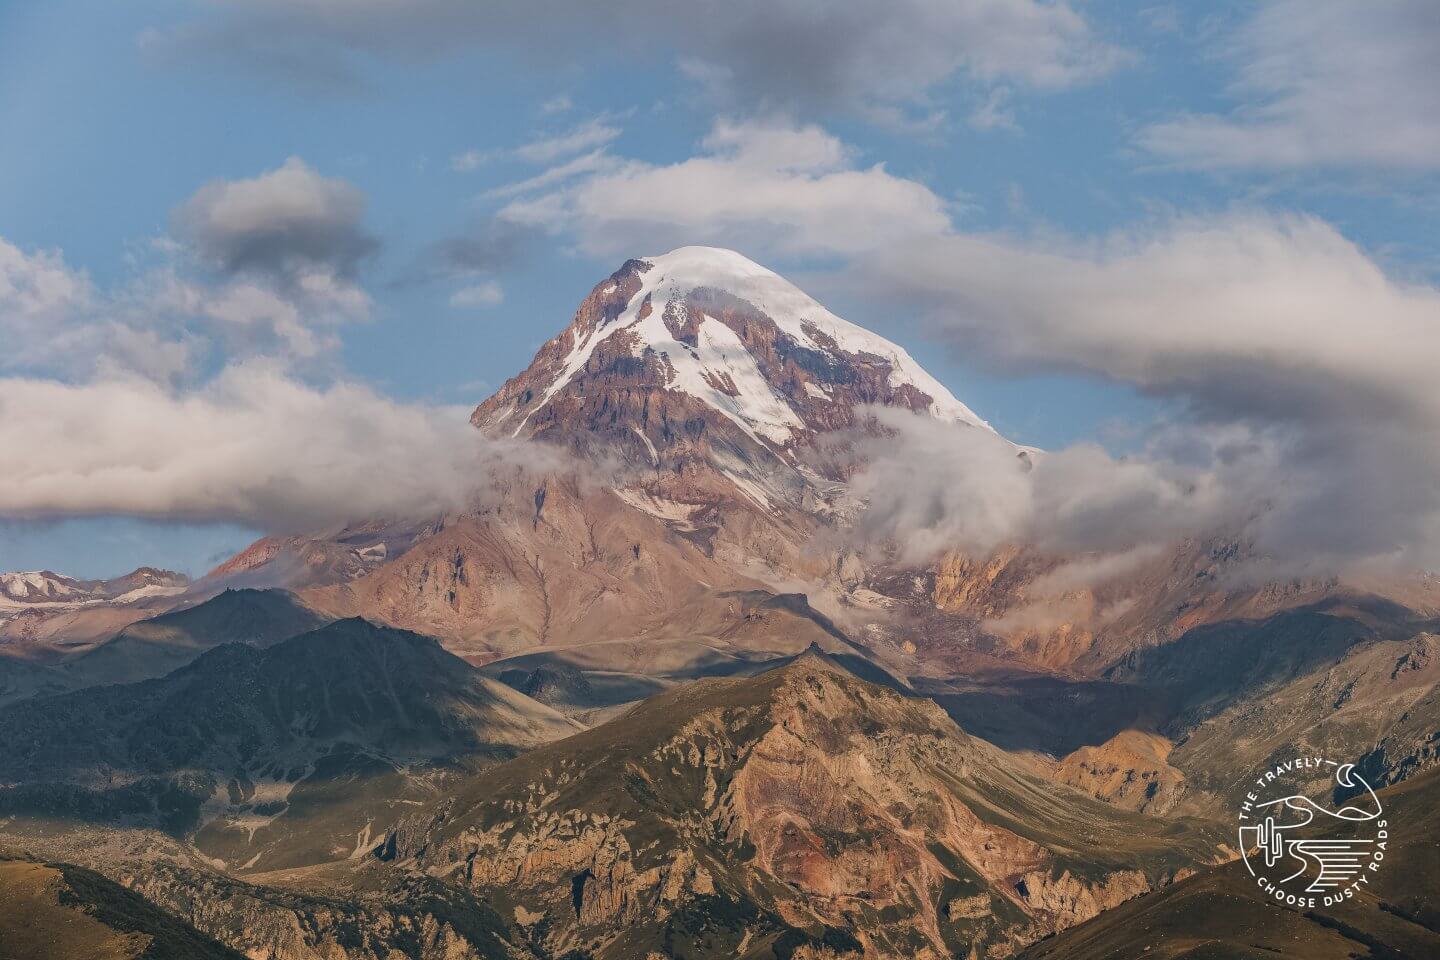 Mt. Kazbeg